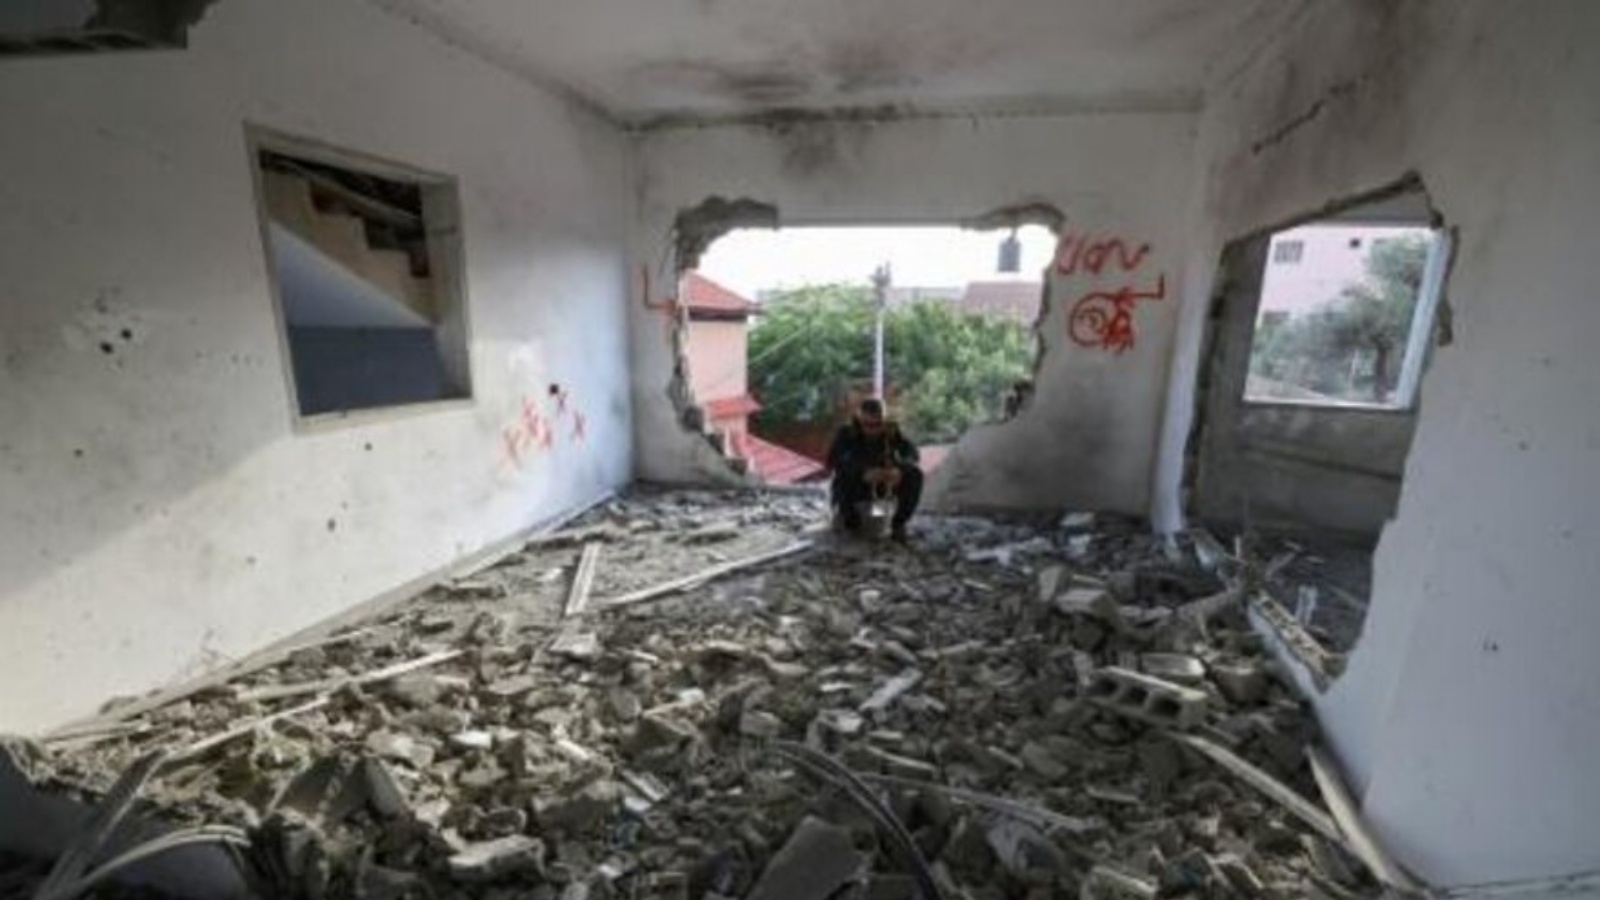  فلسطيني جالس في منزل عمر جرادات بعدما دمرته القوات الإسرائيلية في بلدة السيلة الحارثية قرب جنين في الضفة الغربية المحتلة في 7 مايو 2022